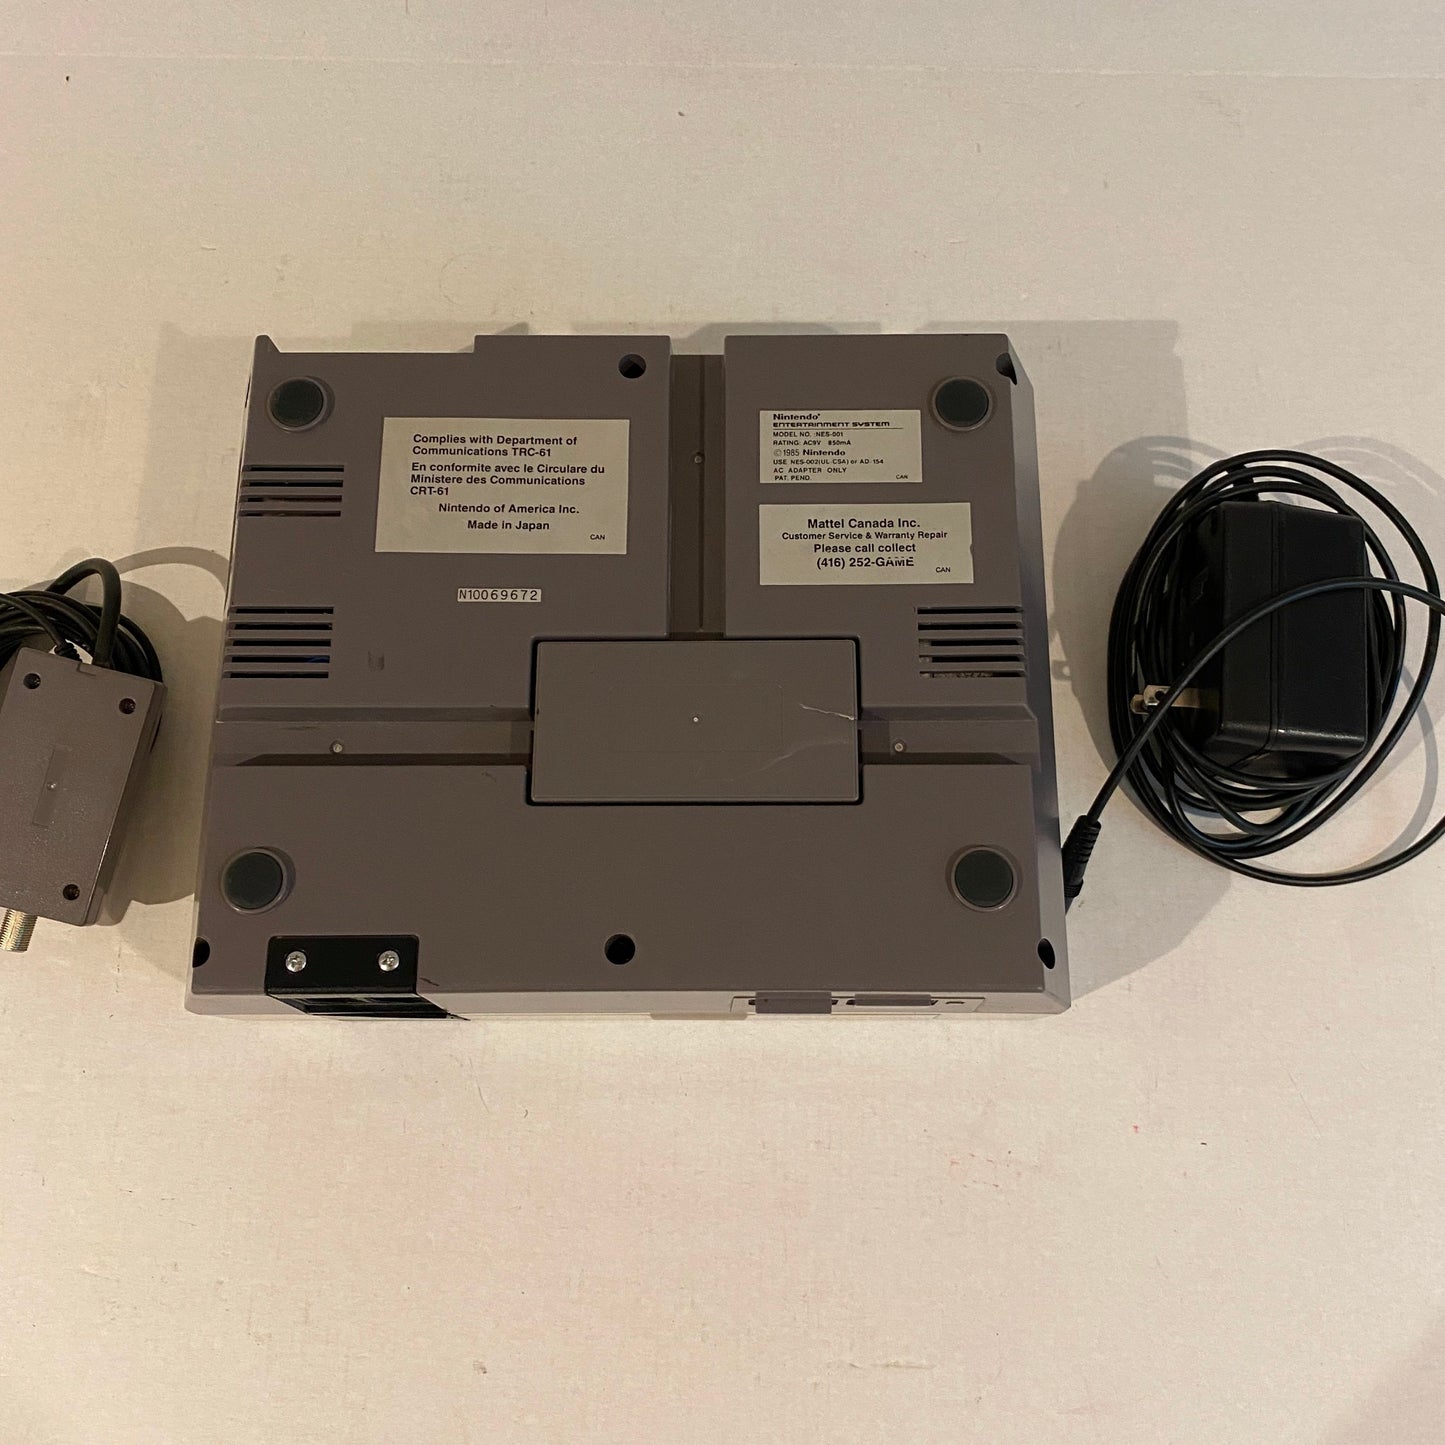 Original Nintendo NES Console